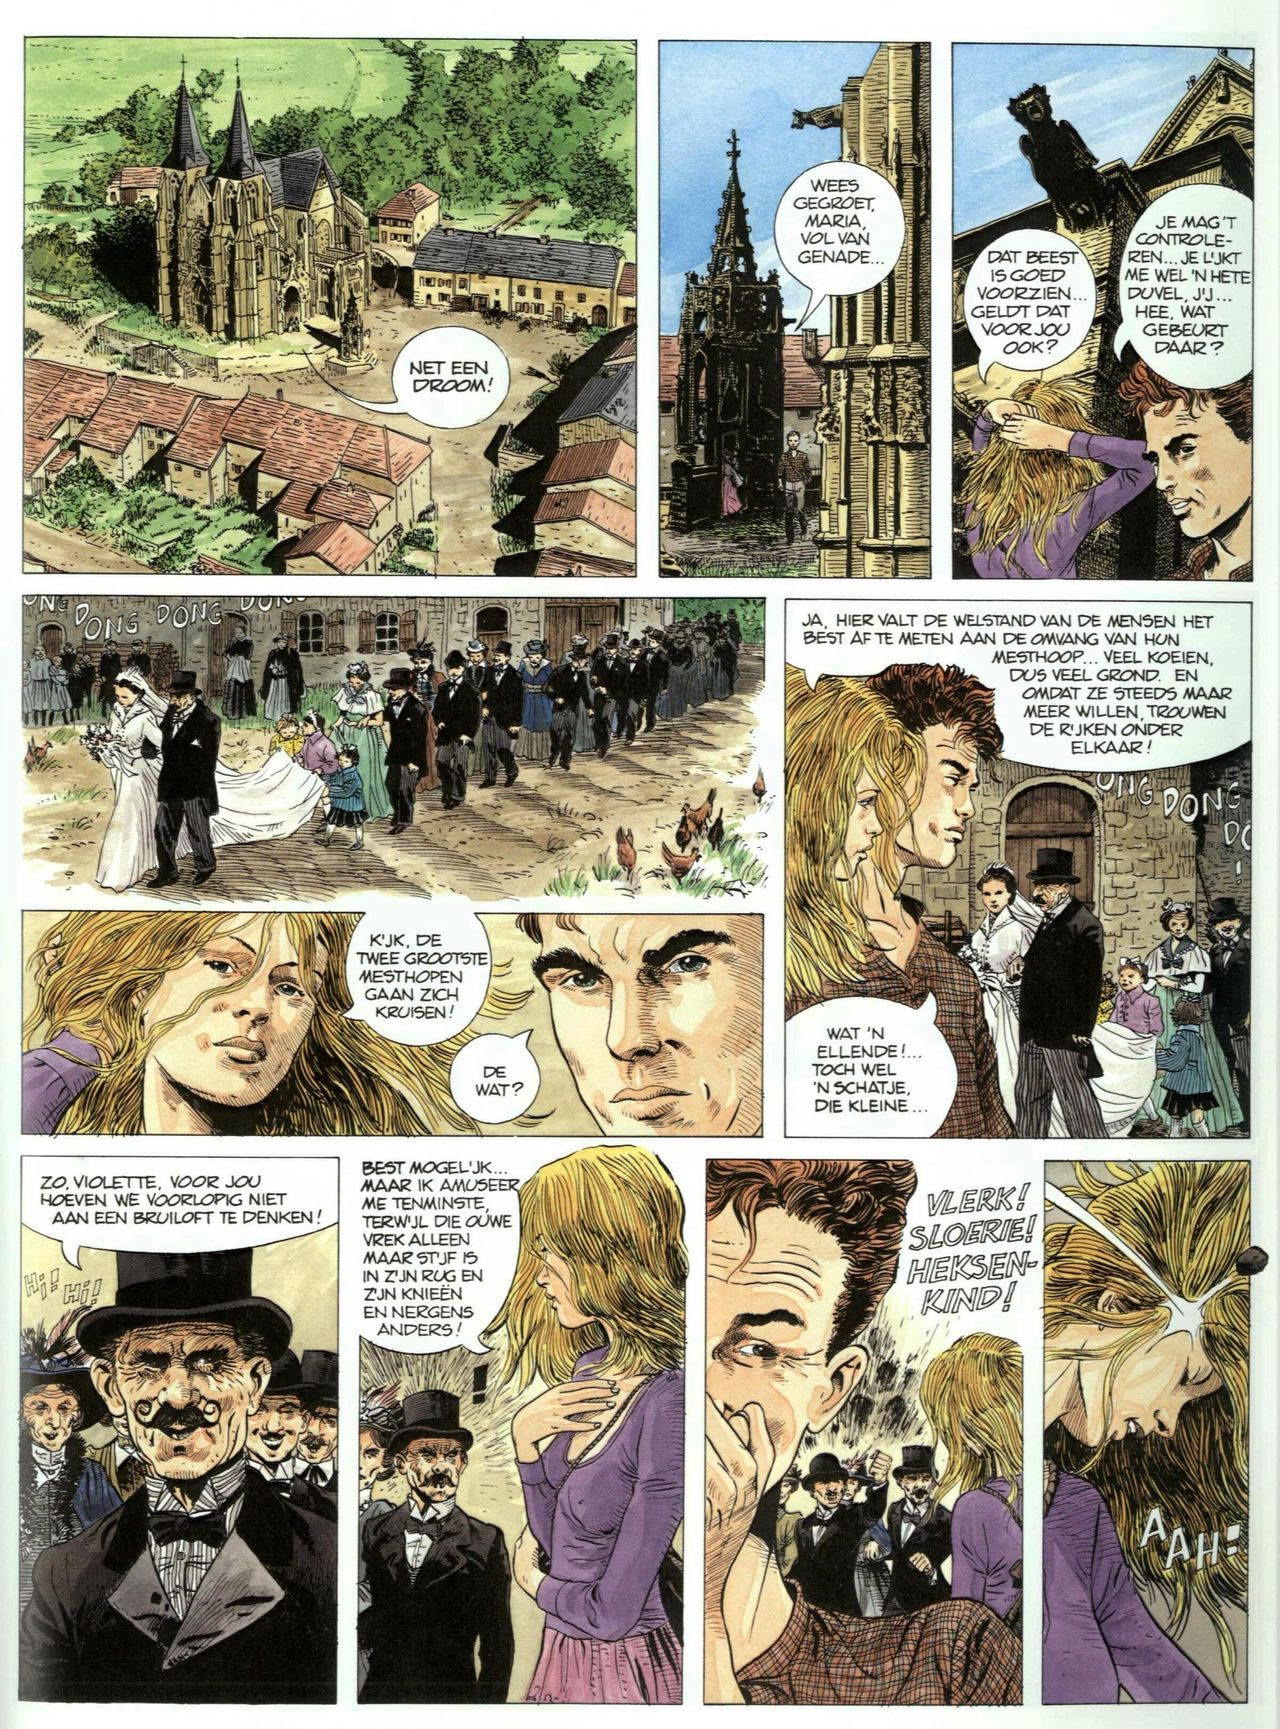 Bosliefje - 01 - Julien (Dutch) Franstalige strips die op deze site staan, hier is de Nederlandse uitgave! 30